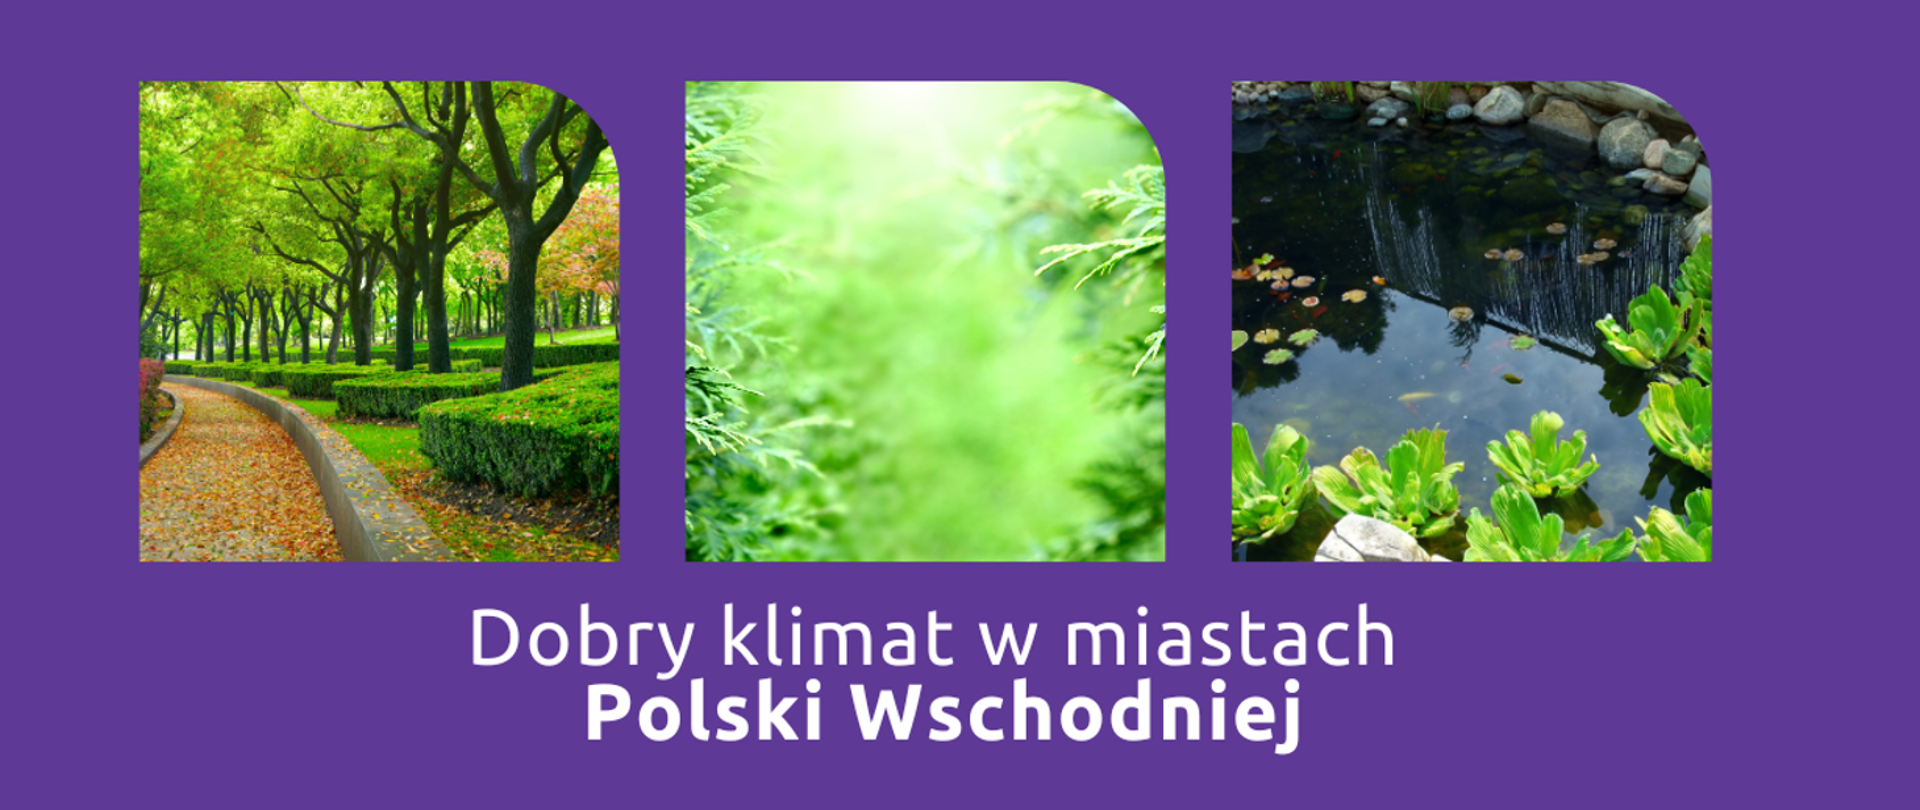 Dobry klimat w miastach Polski Wschodniej. Rusza nabór projektów do dofinansowania w obszarze adaptacji miast do zmian klimatu